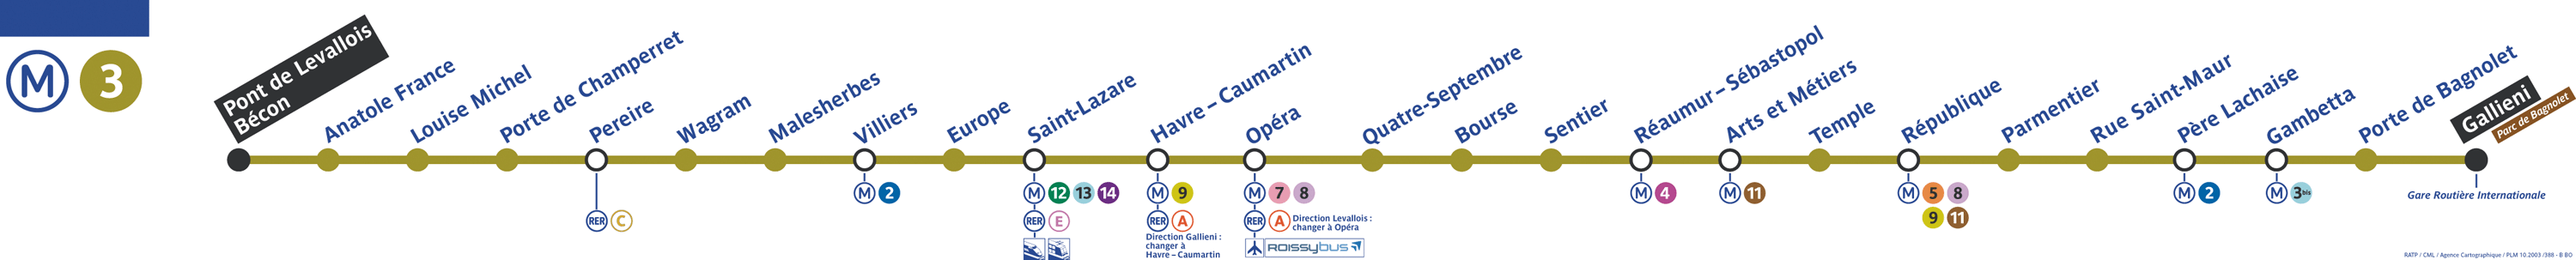 Plan ligne 3 métro de Paris